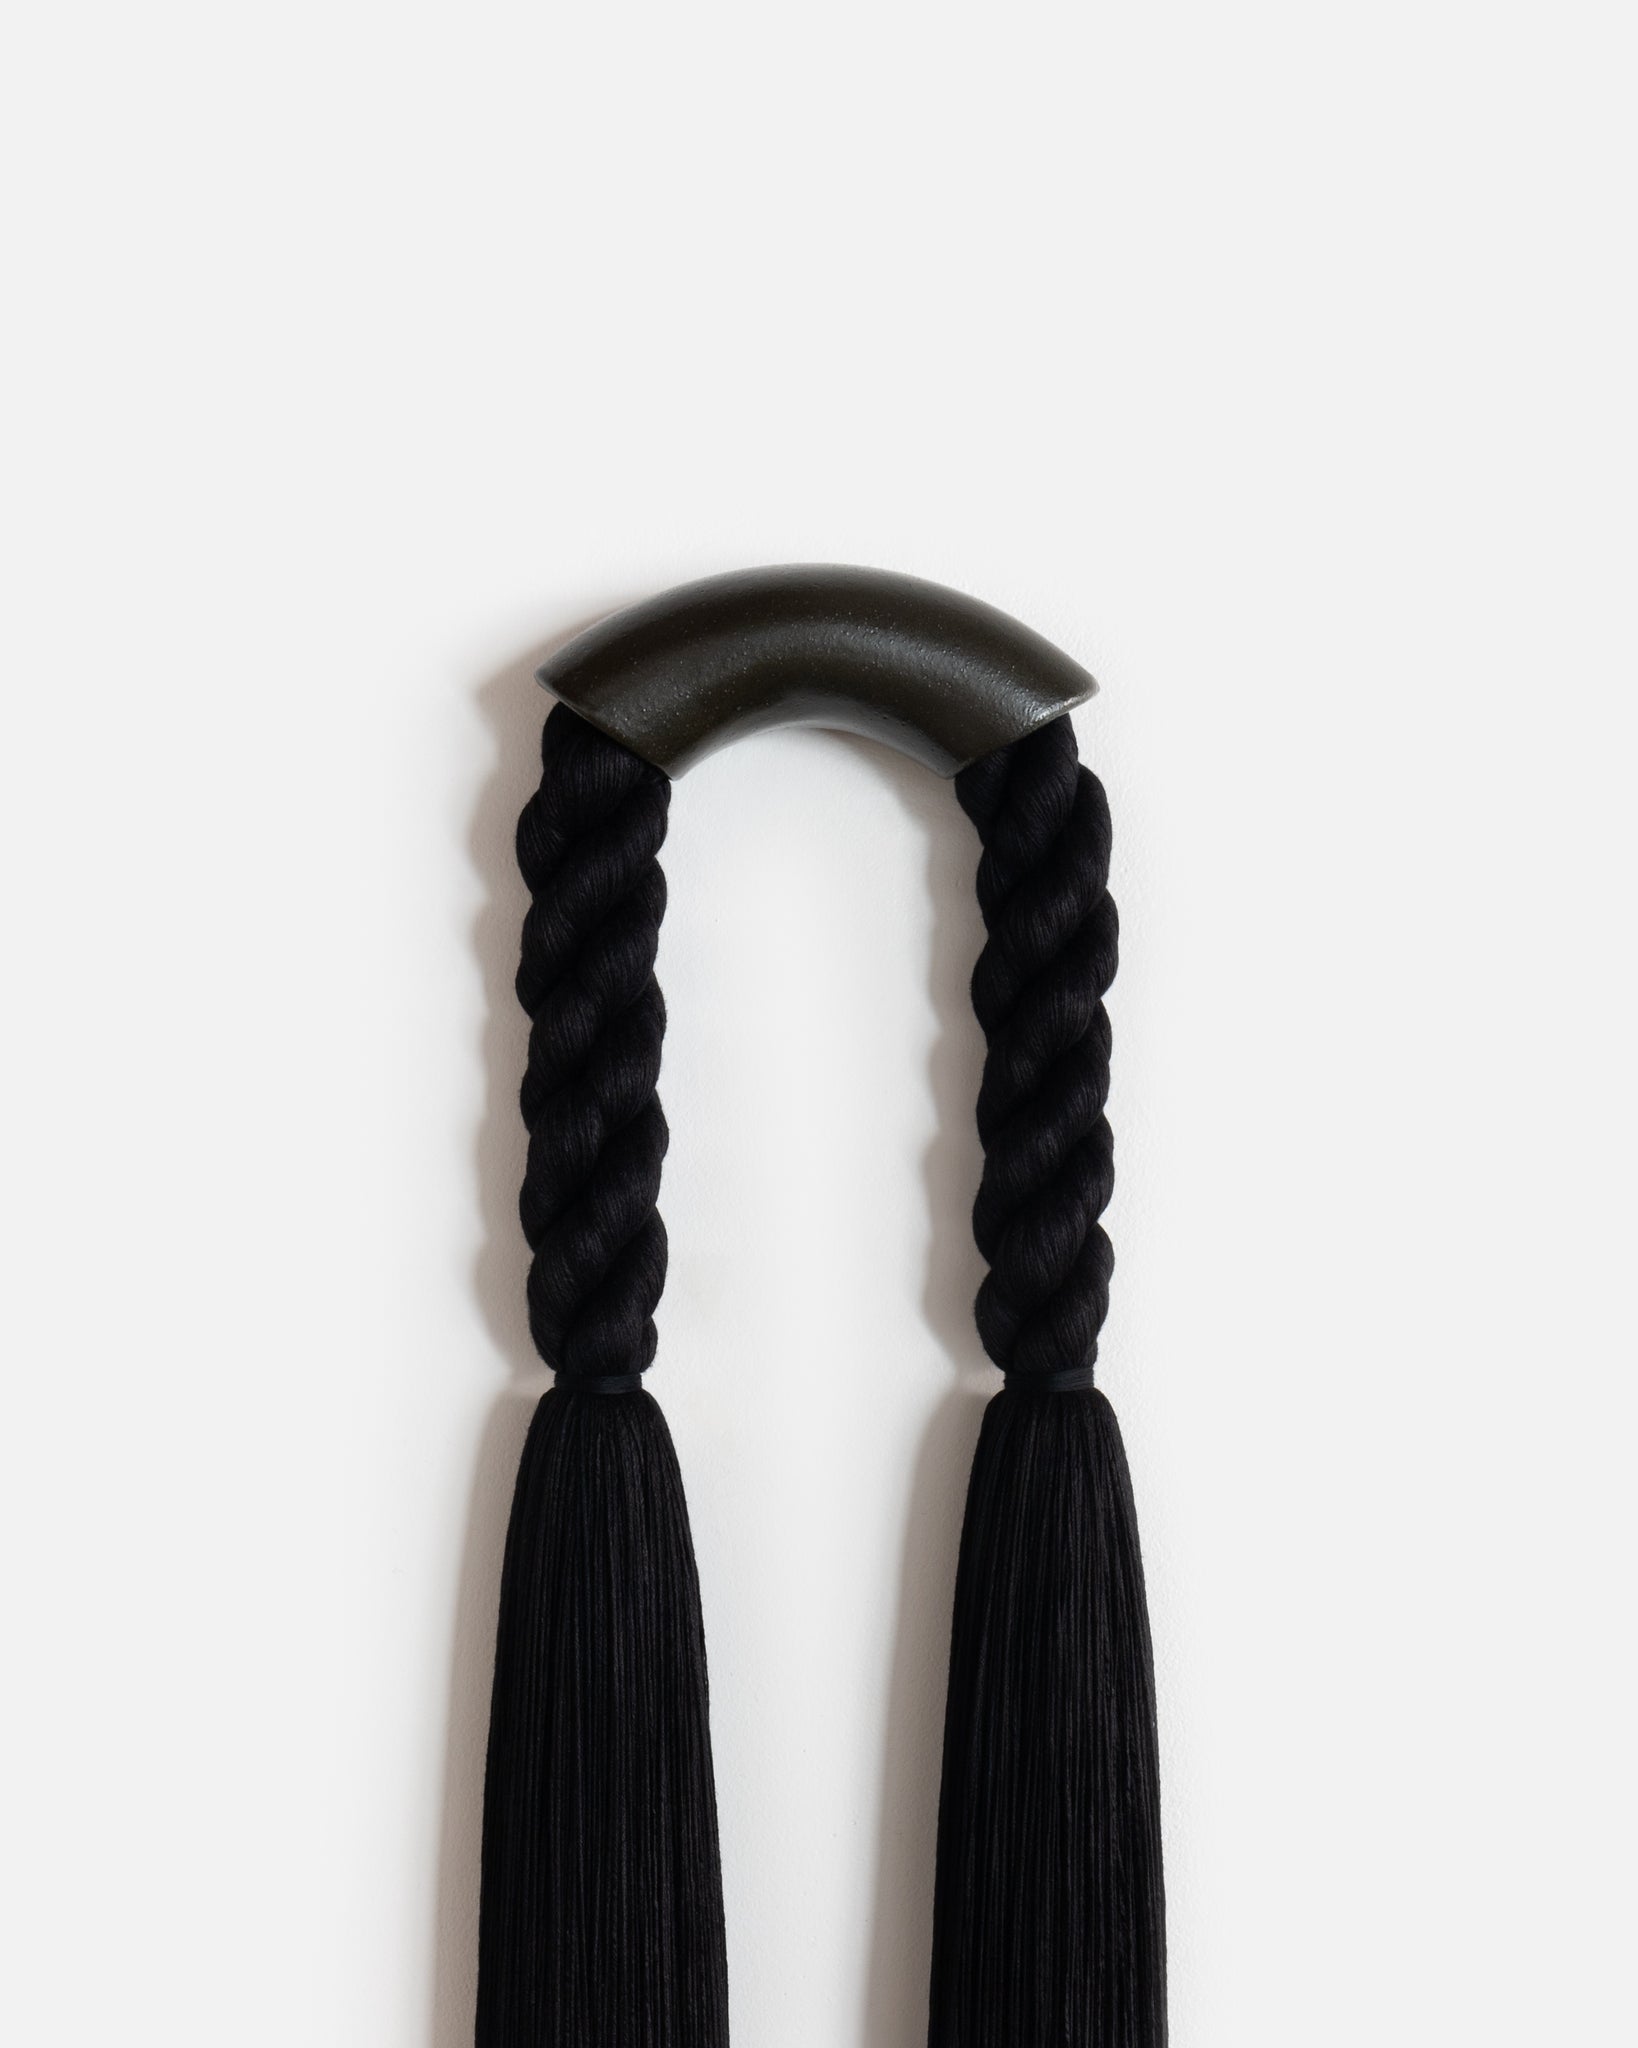 Medium Black Ceramic Semi Arch (Black Rope)